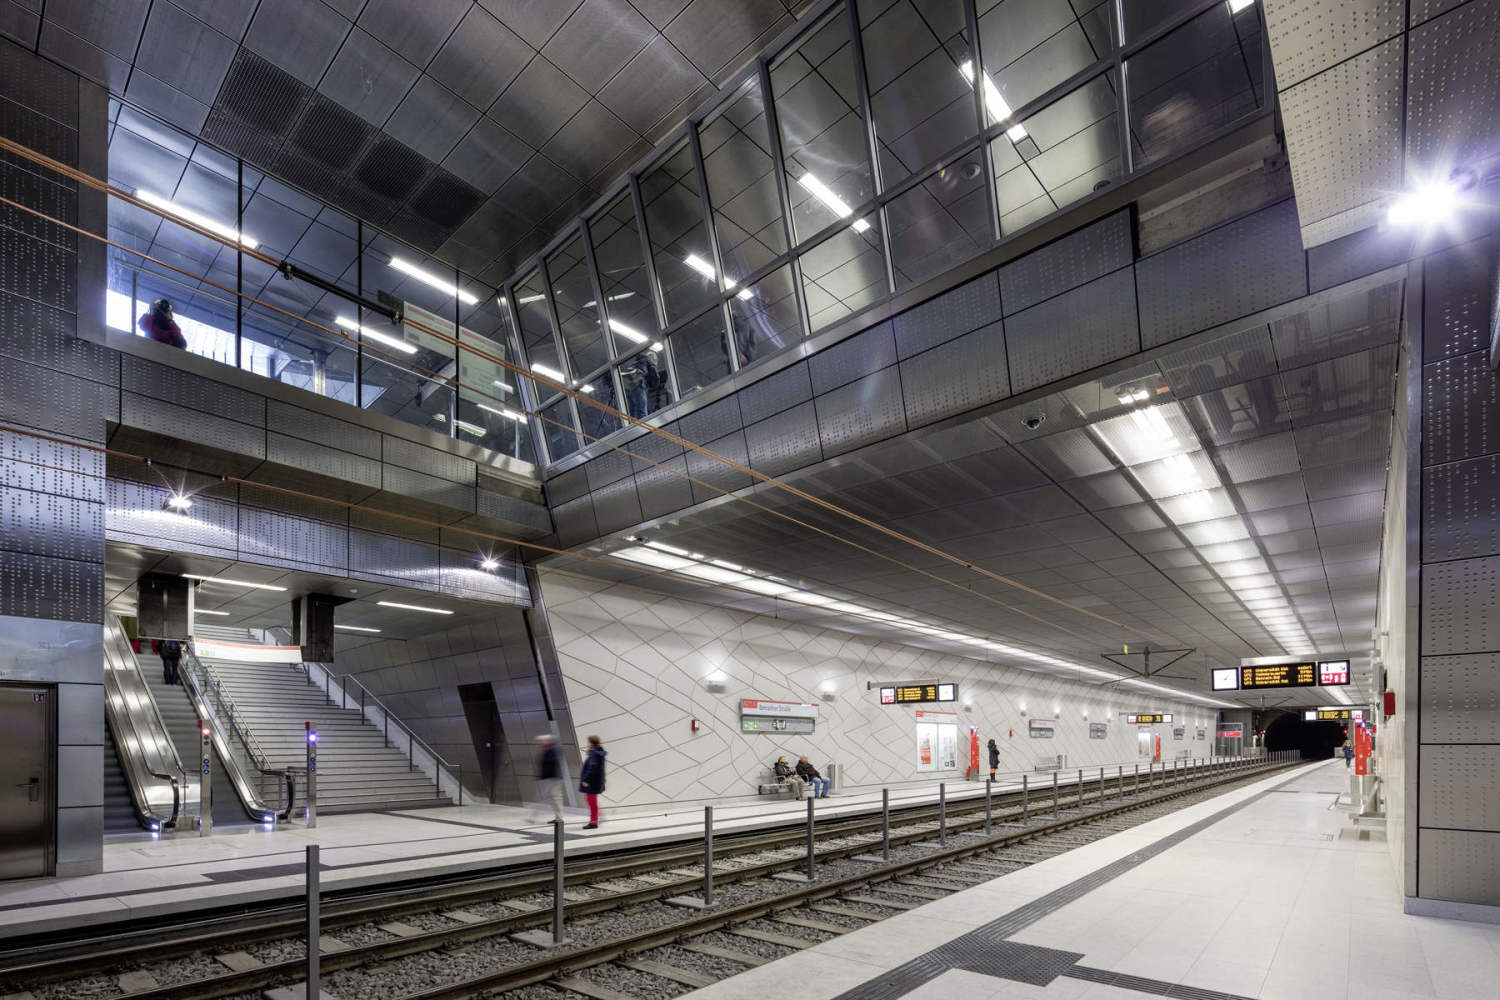 Wehrhahnlinie Duesseldorf, Stations, Benrather Strasse, Concept, Thomas Stricker, netzwerkarchitekten, Bahnhof